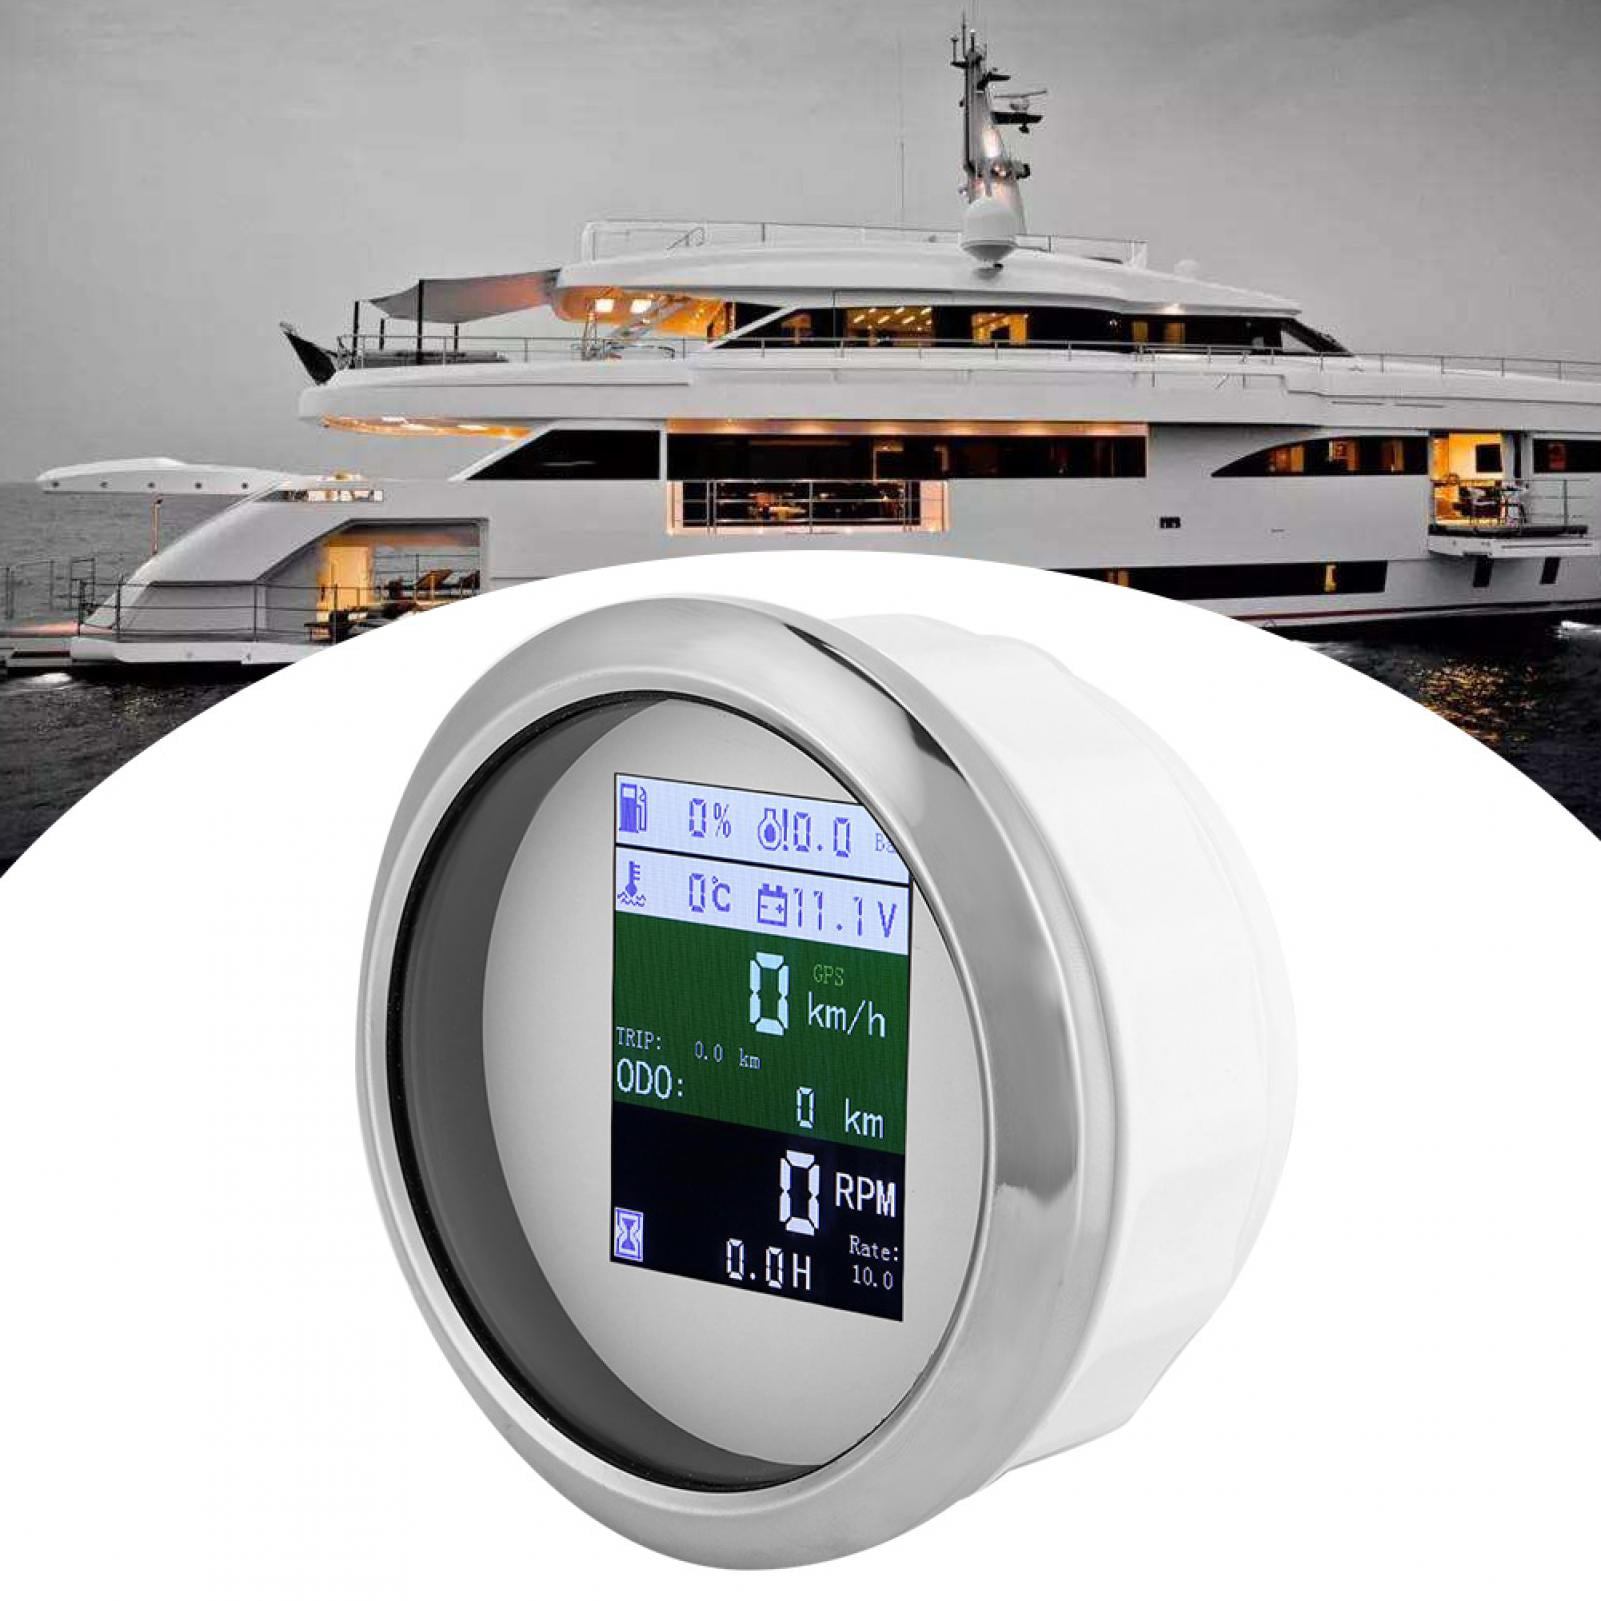 GPS Speedometer Tachometer Voltmeter Water Temp Fuel Level Oil Pressure Gauge Yacht FastUU 6‑in‑1 Multifunctional Gauge etc Waterproof Anti‑Fog Combo Gauge for Car Boat 